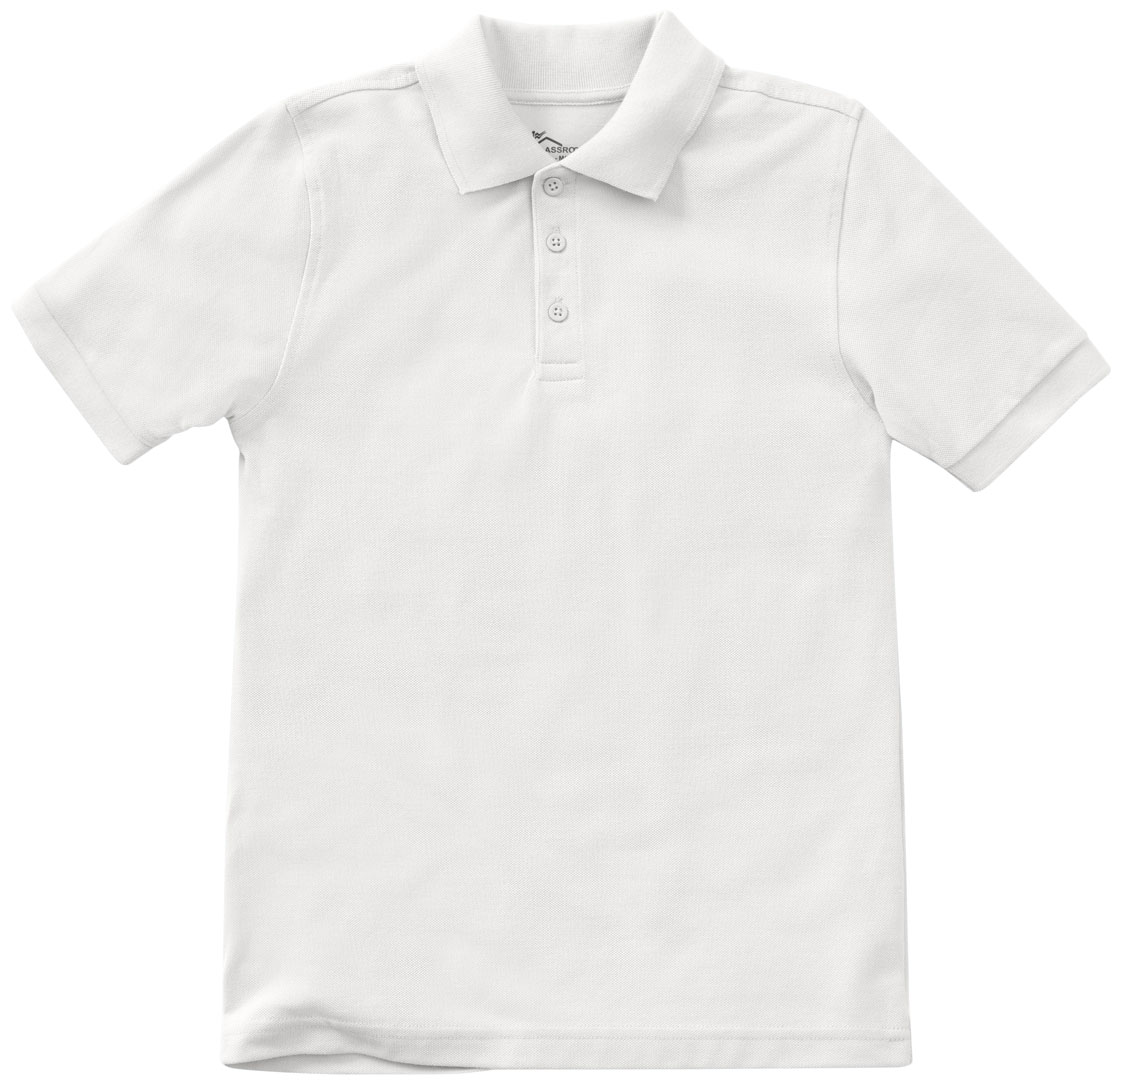 Unisex Pique Polo Shirt | TresMC Uniforms